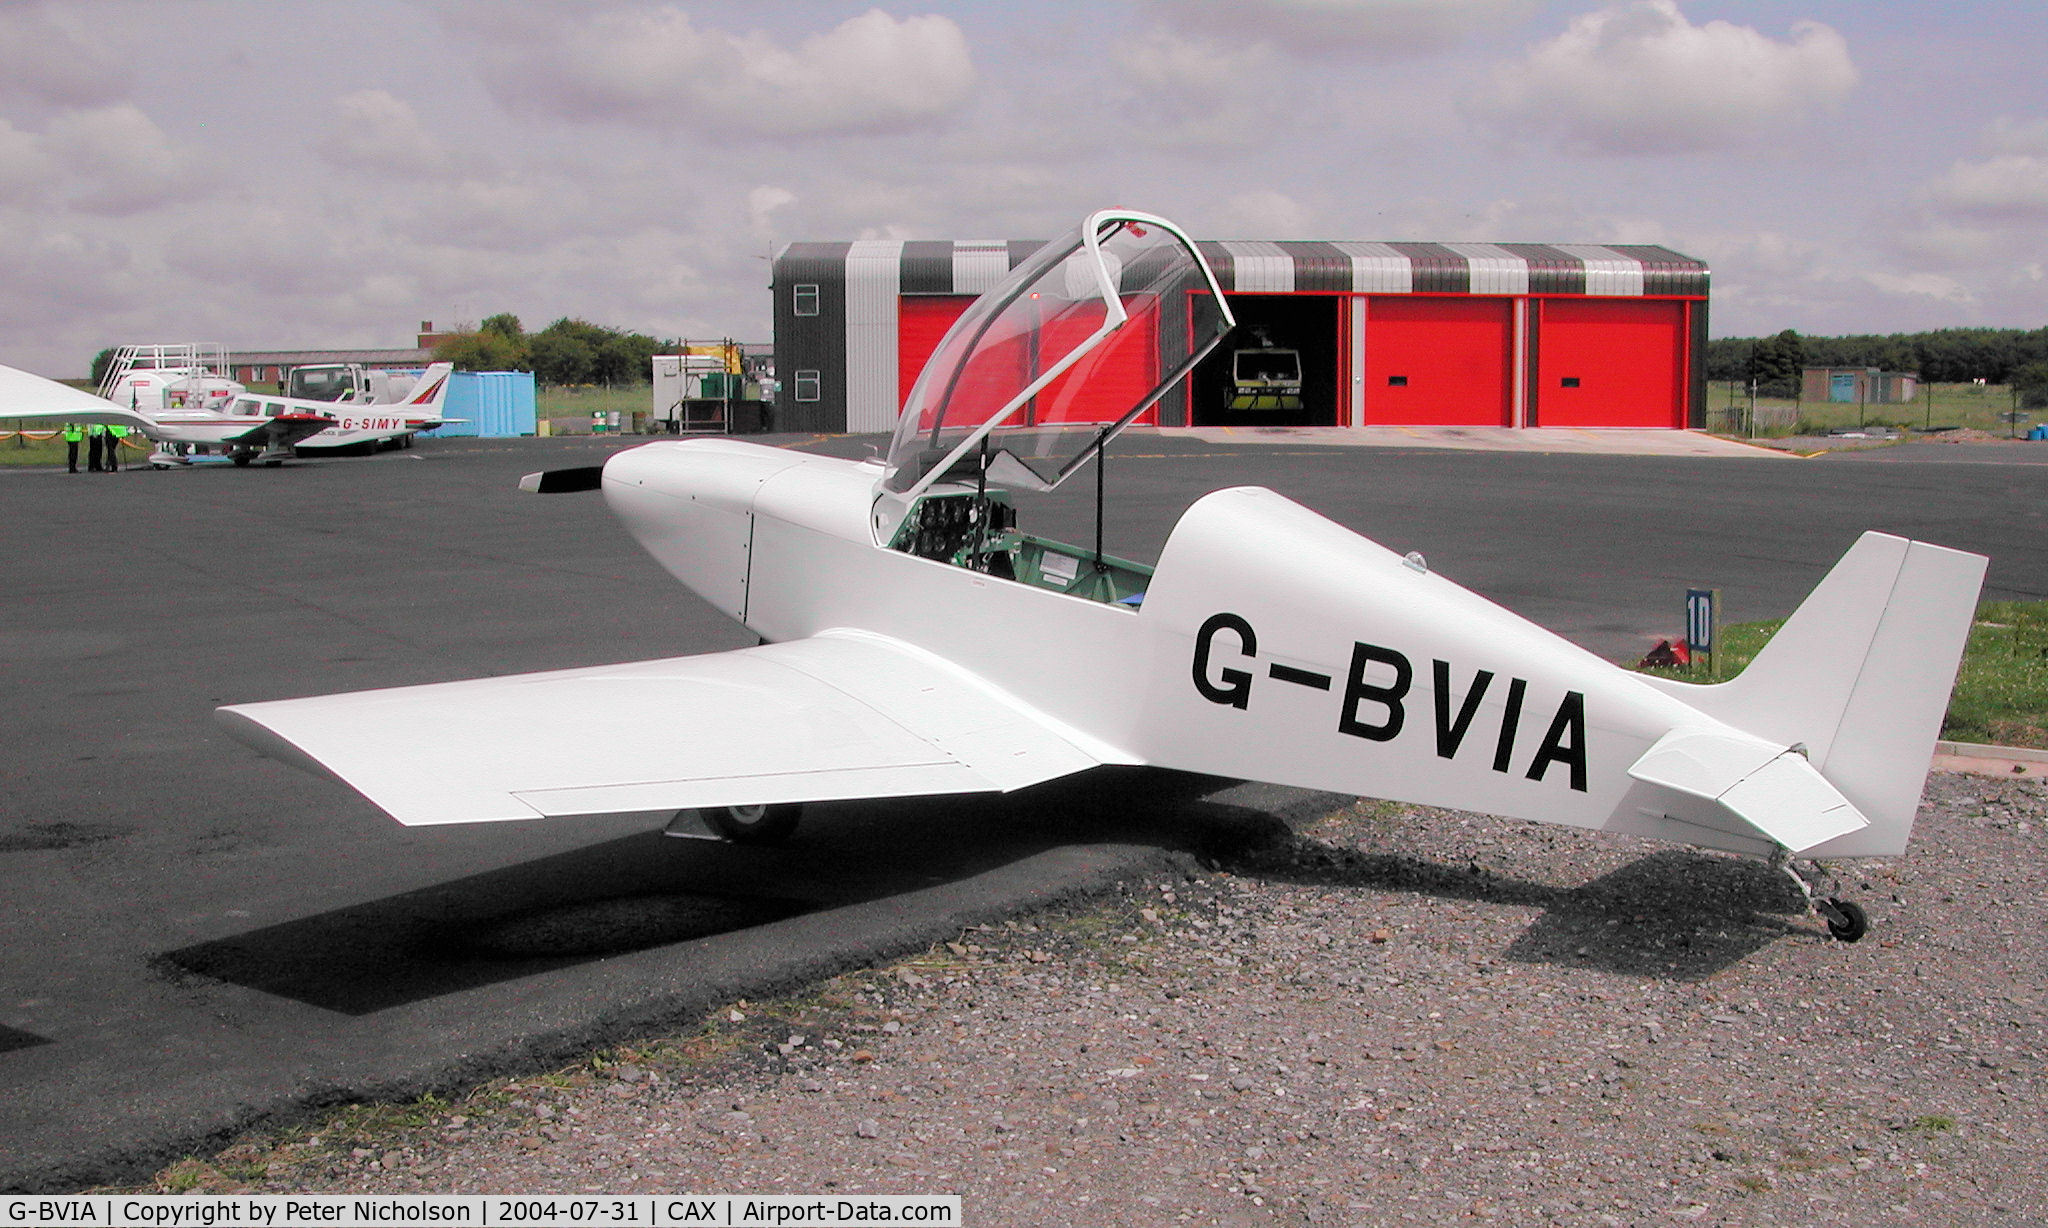 G-BVIA, 2003 Rand KR-2 C/N PFA 129-11004, Rand KR-2 as seen at the 2004 Carlisle Fly-in.